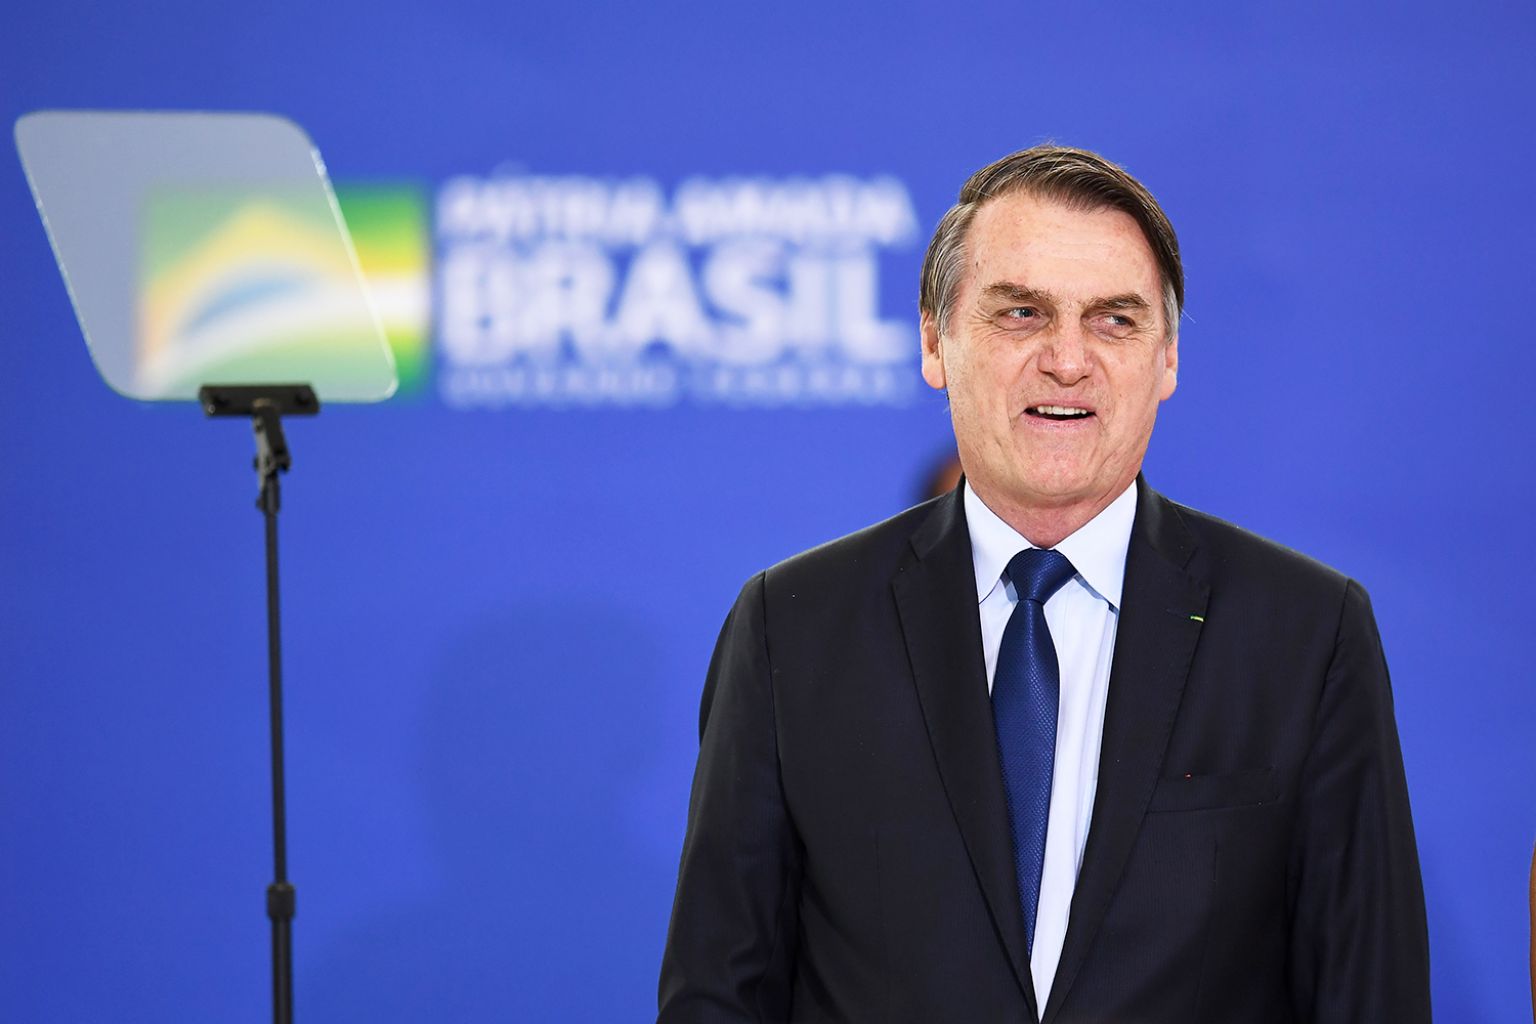 Jair Bolsonaro tem a pior avaliação entre presidentes de primeiro mandato